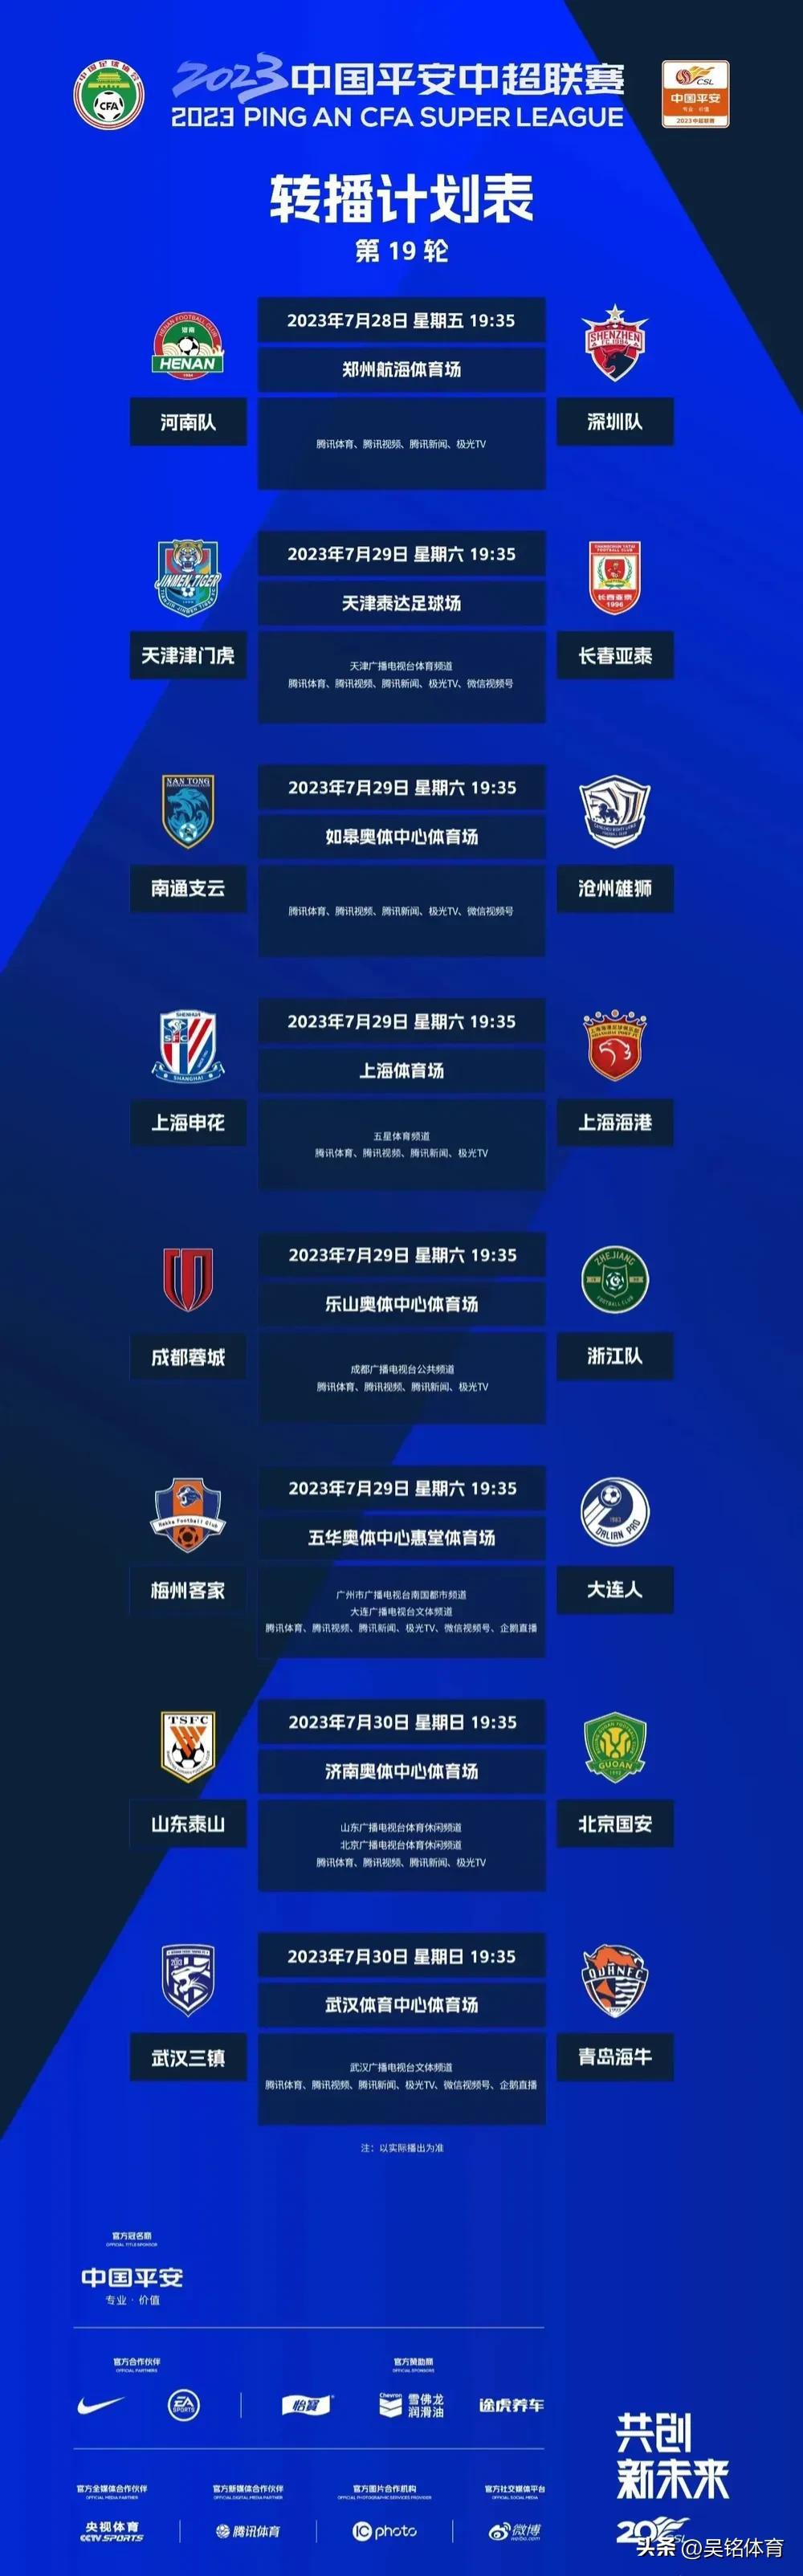 中超联赛第19轮，最新精准预测来了，看看几场焦点战情况

河南2:0深圳
津门虎